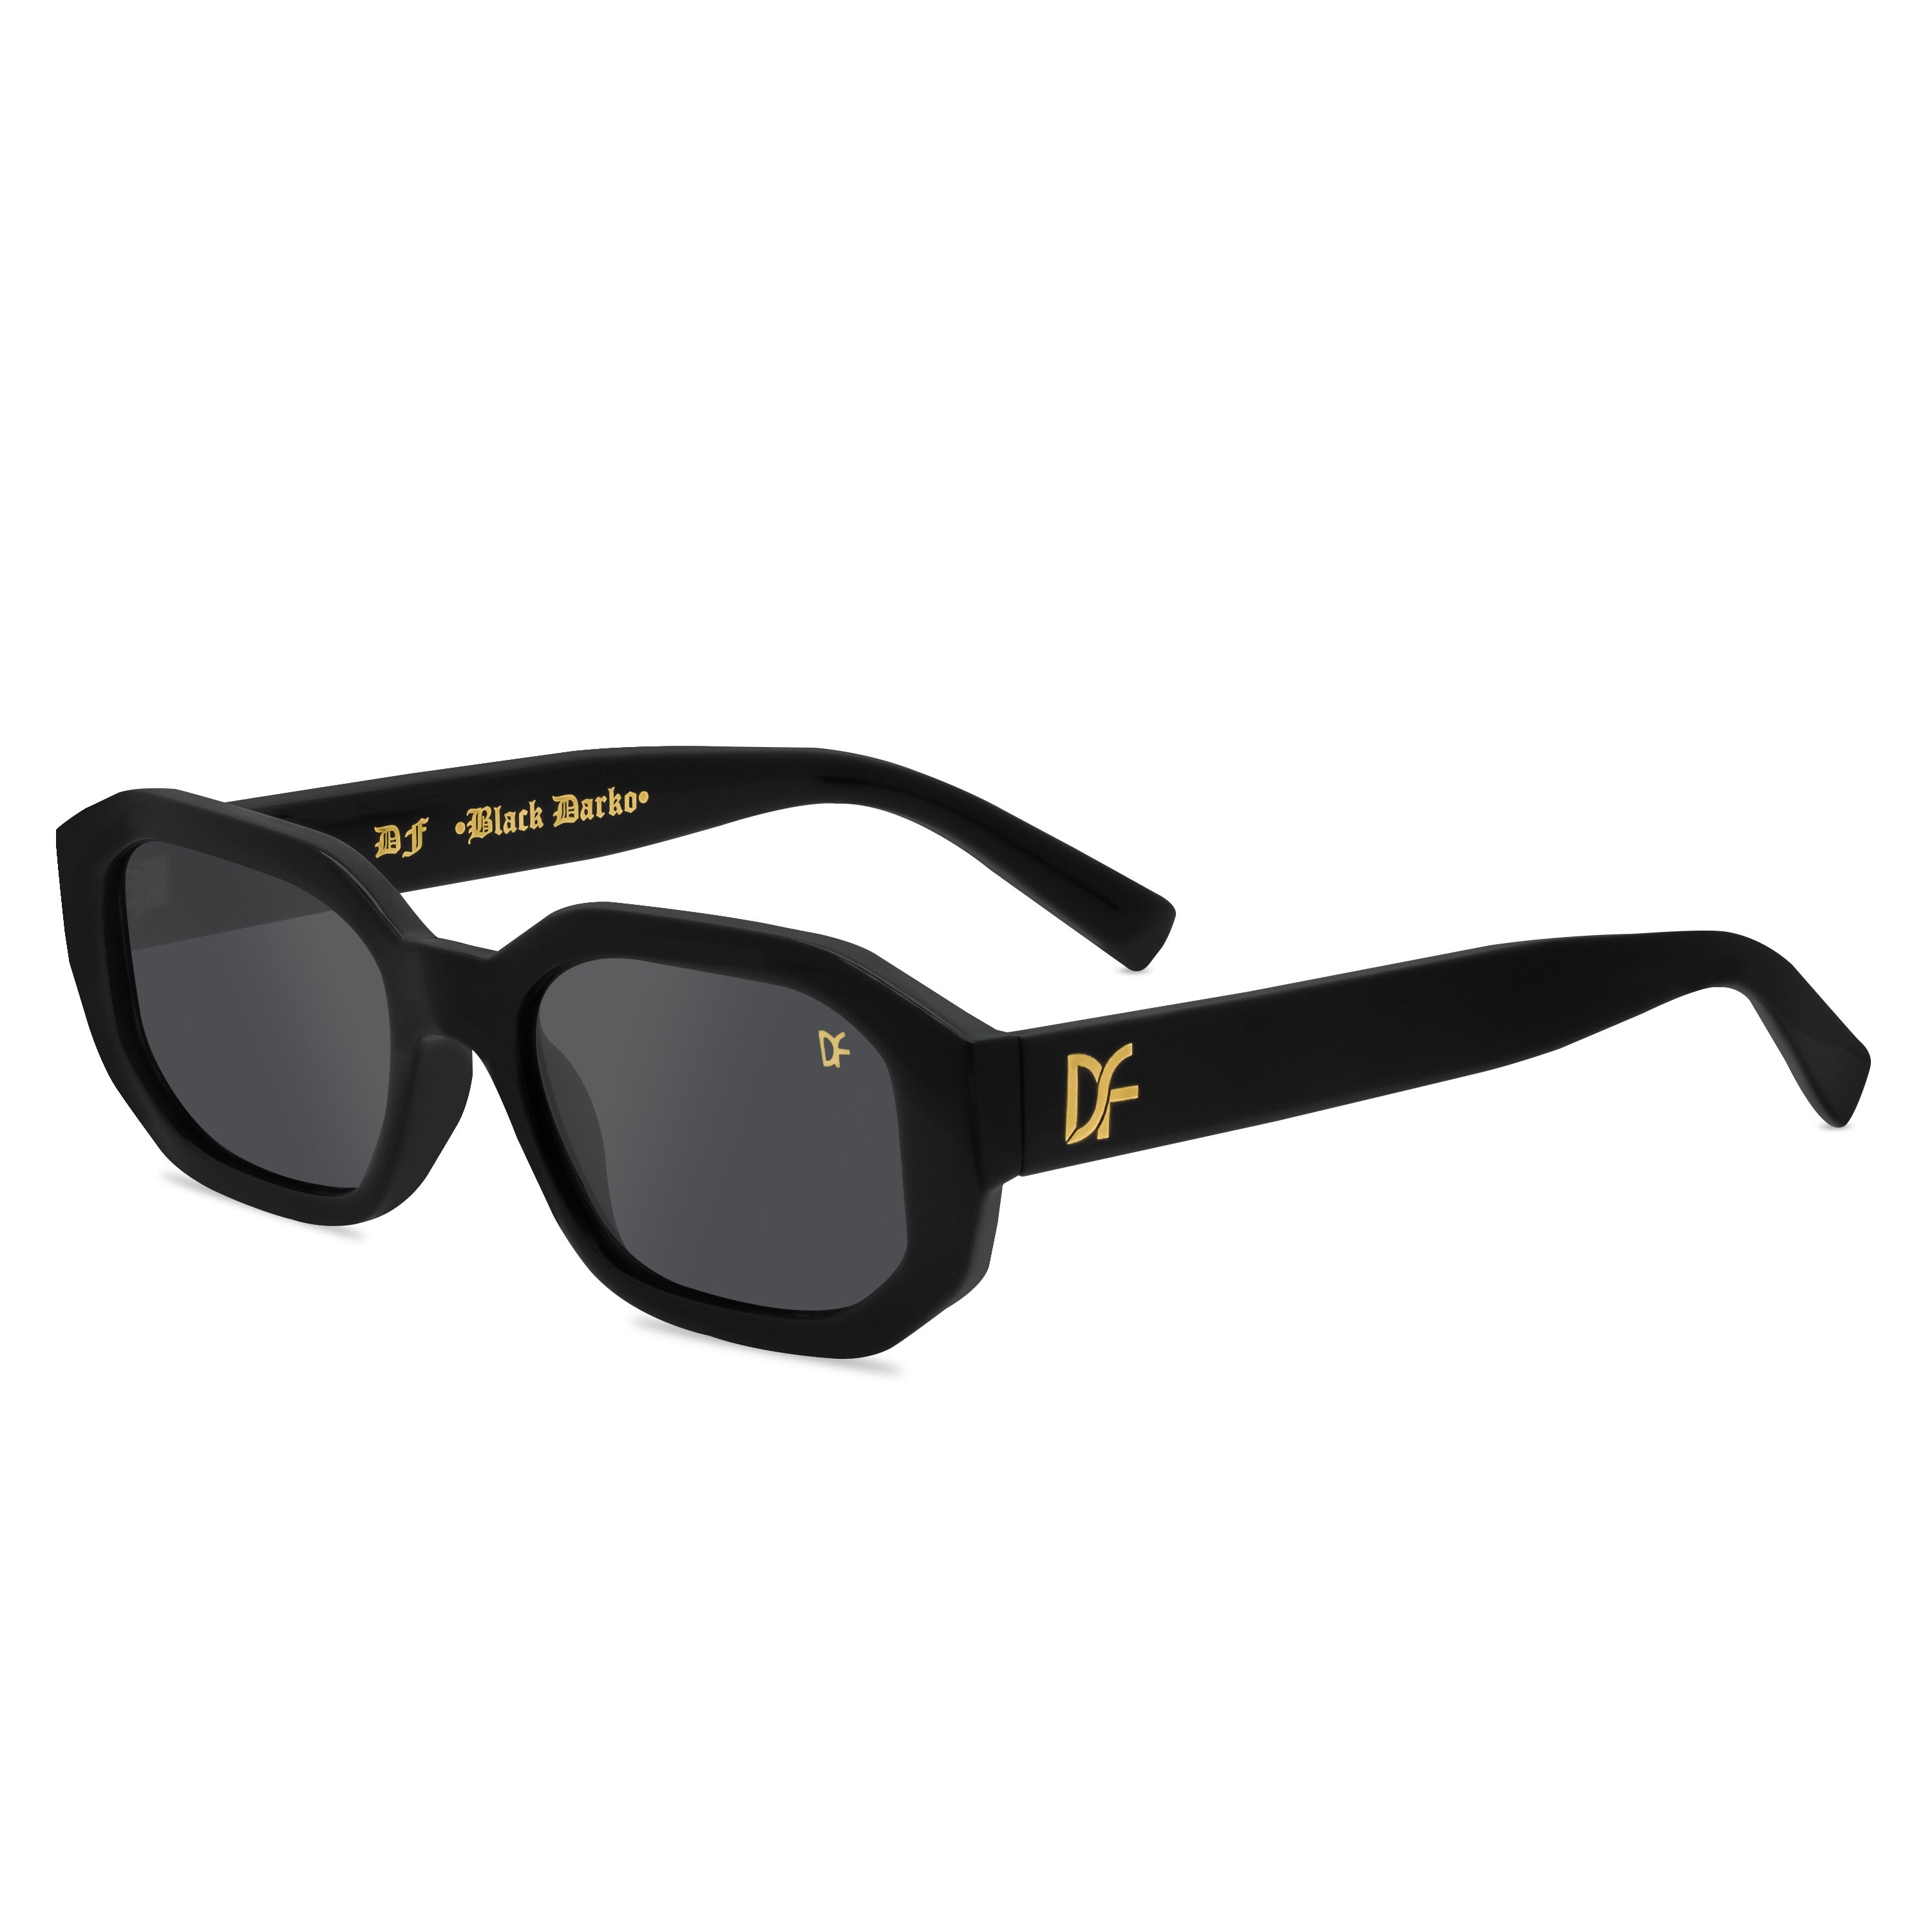 Elisian Smoke Tinted Wraparound Sunglasses S66B4535 @ ₹999